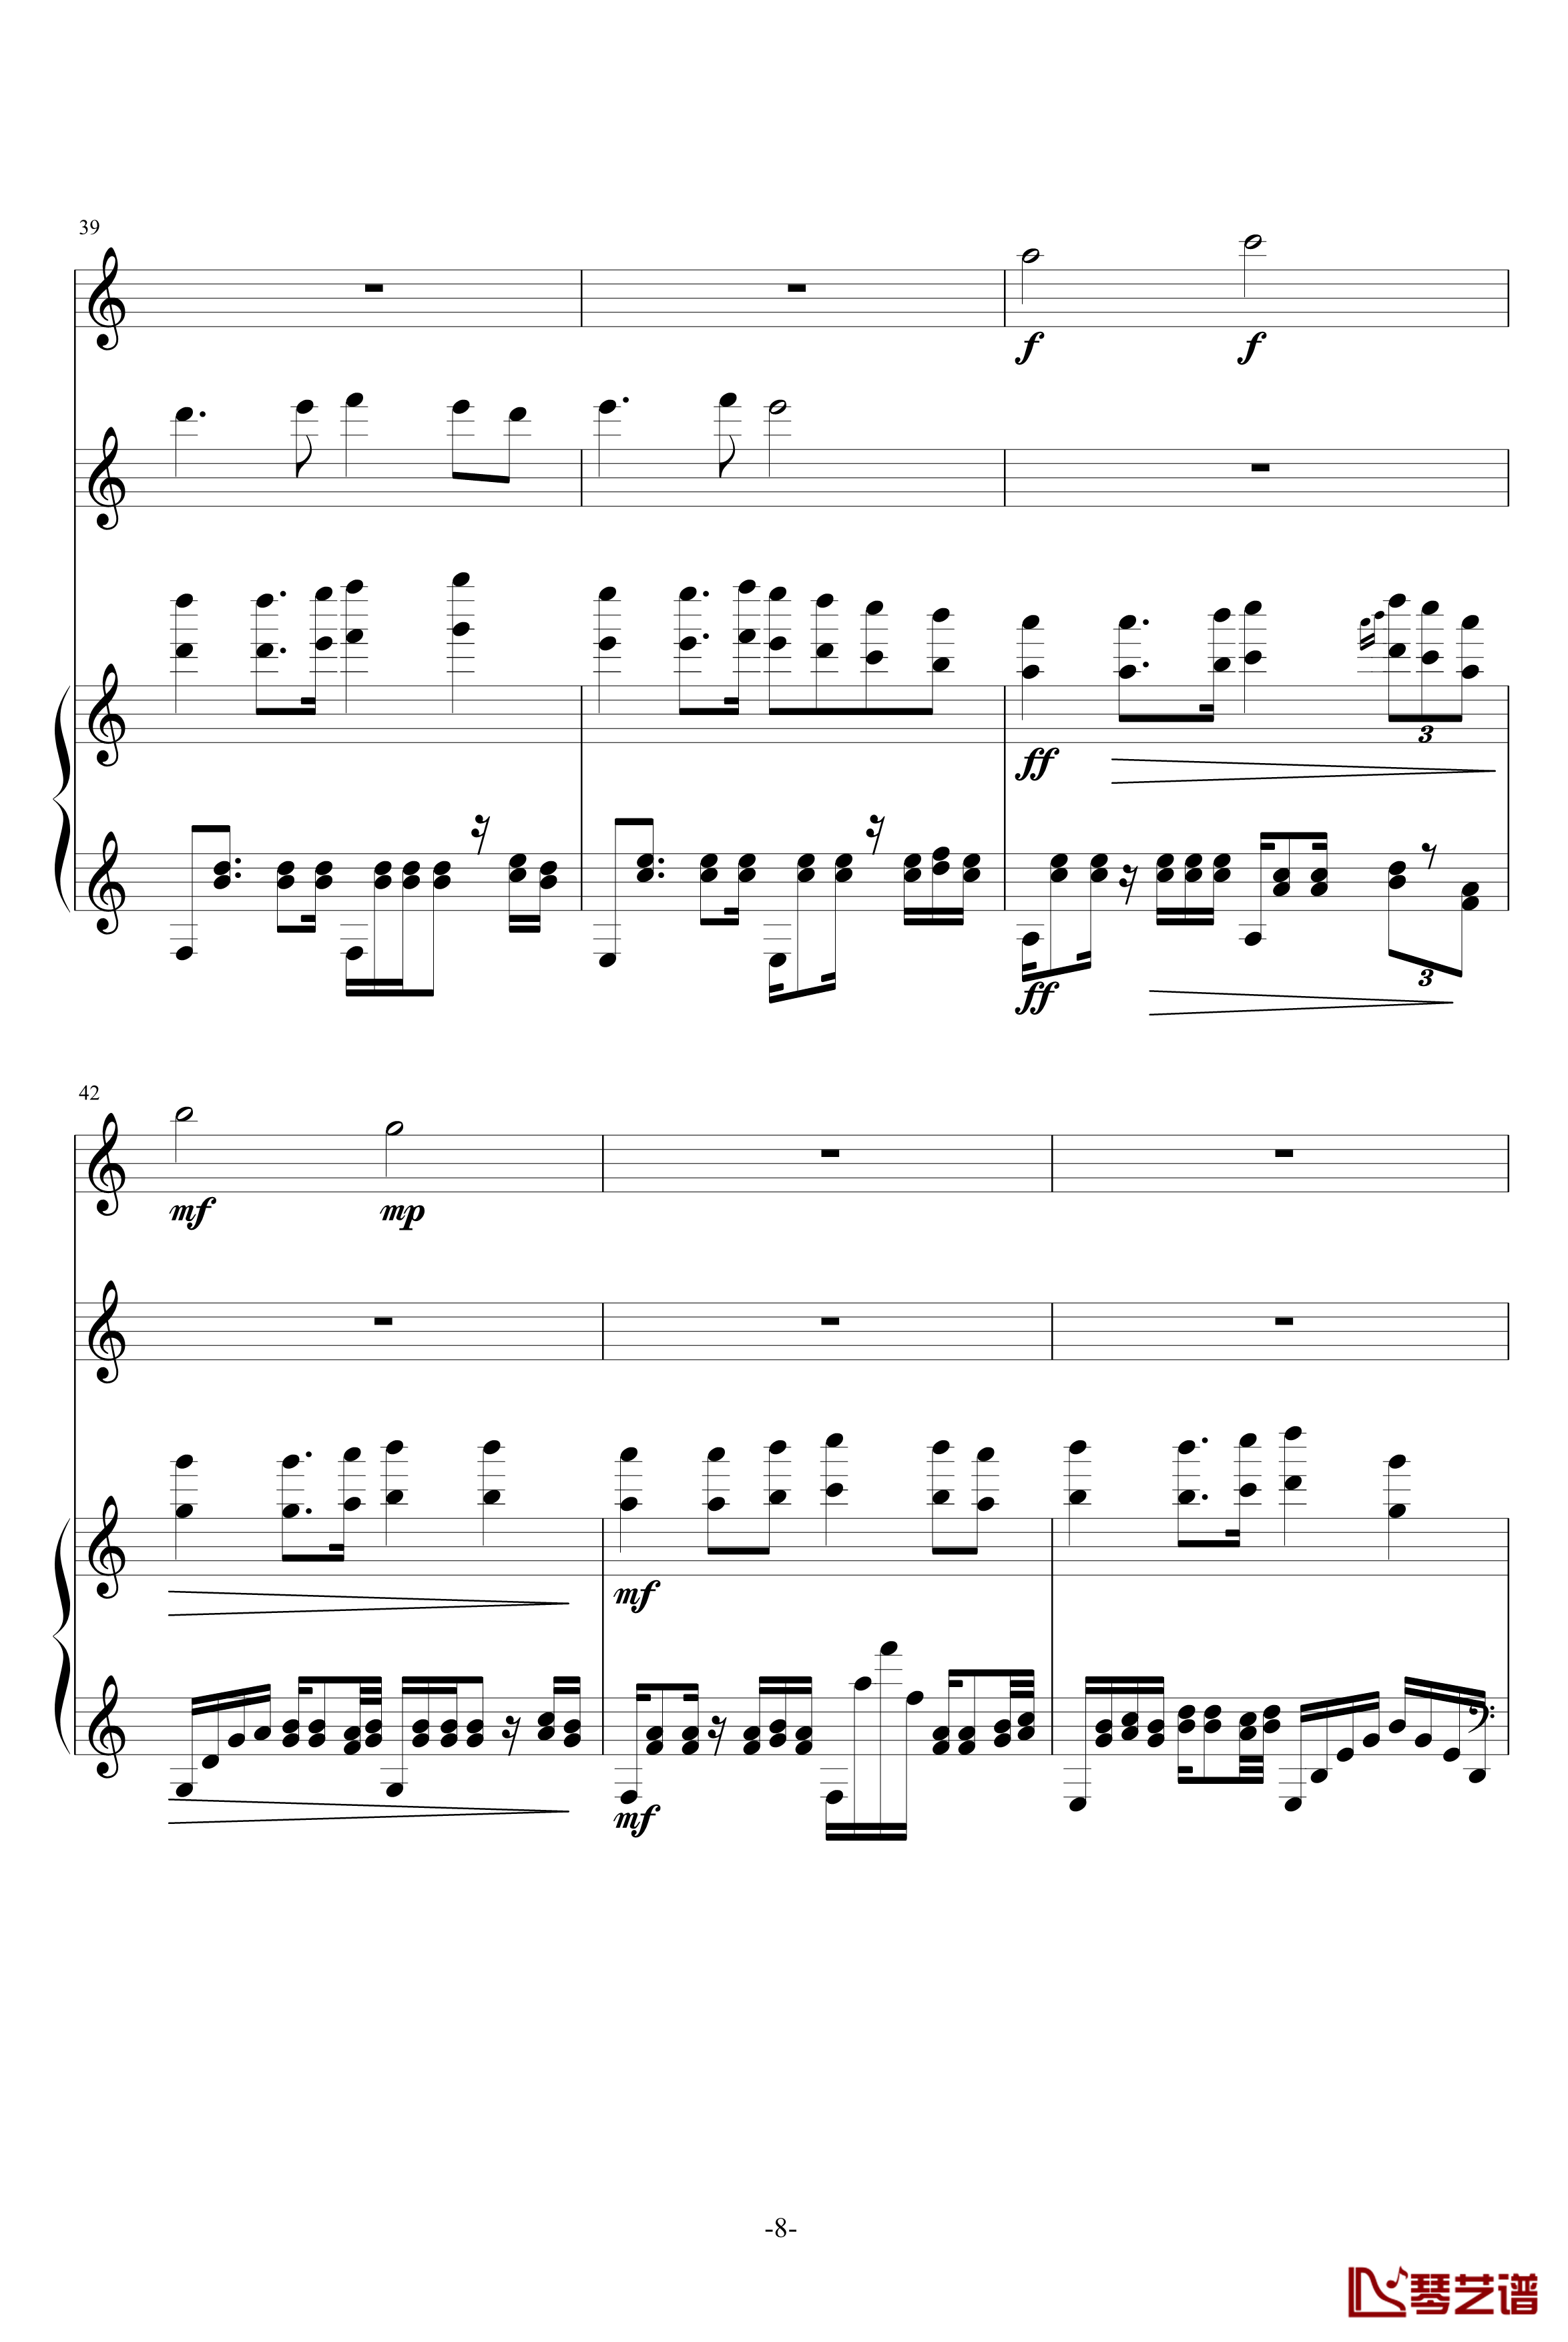 星之小舞曲钢琴谱-升c小调8